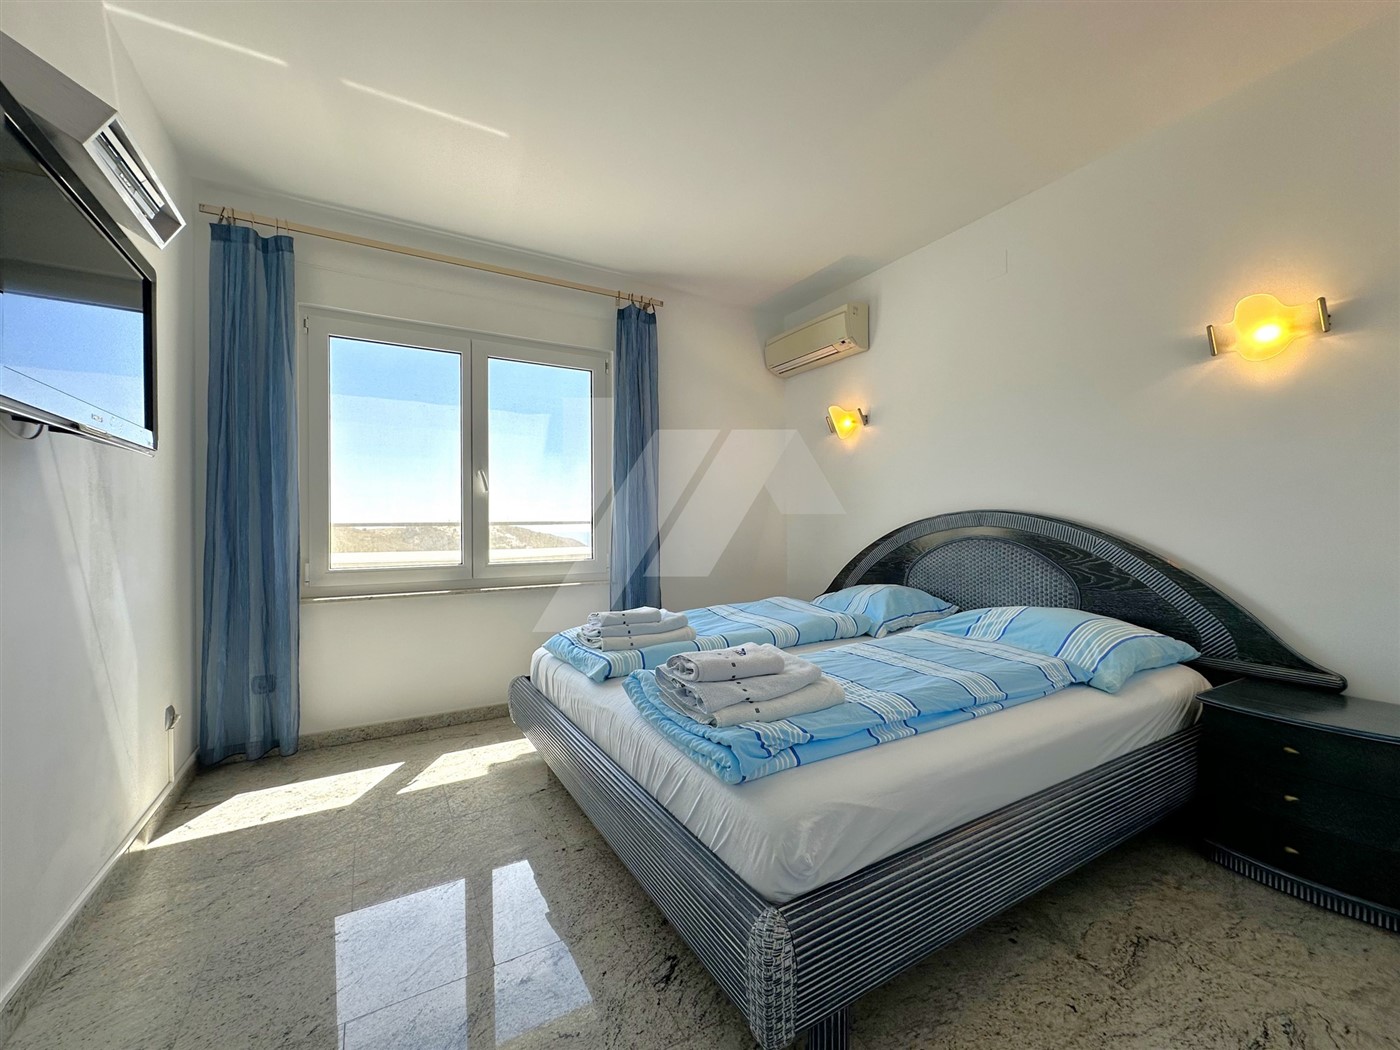 Villa met panoramisch zeezicht te koop in Moraira, Costa Blanca.